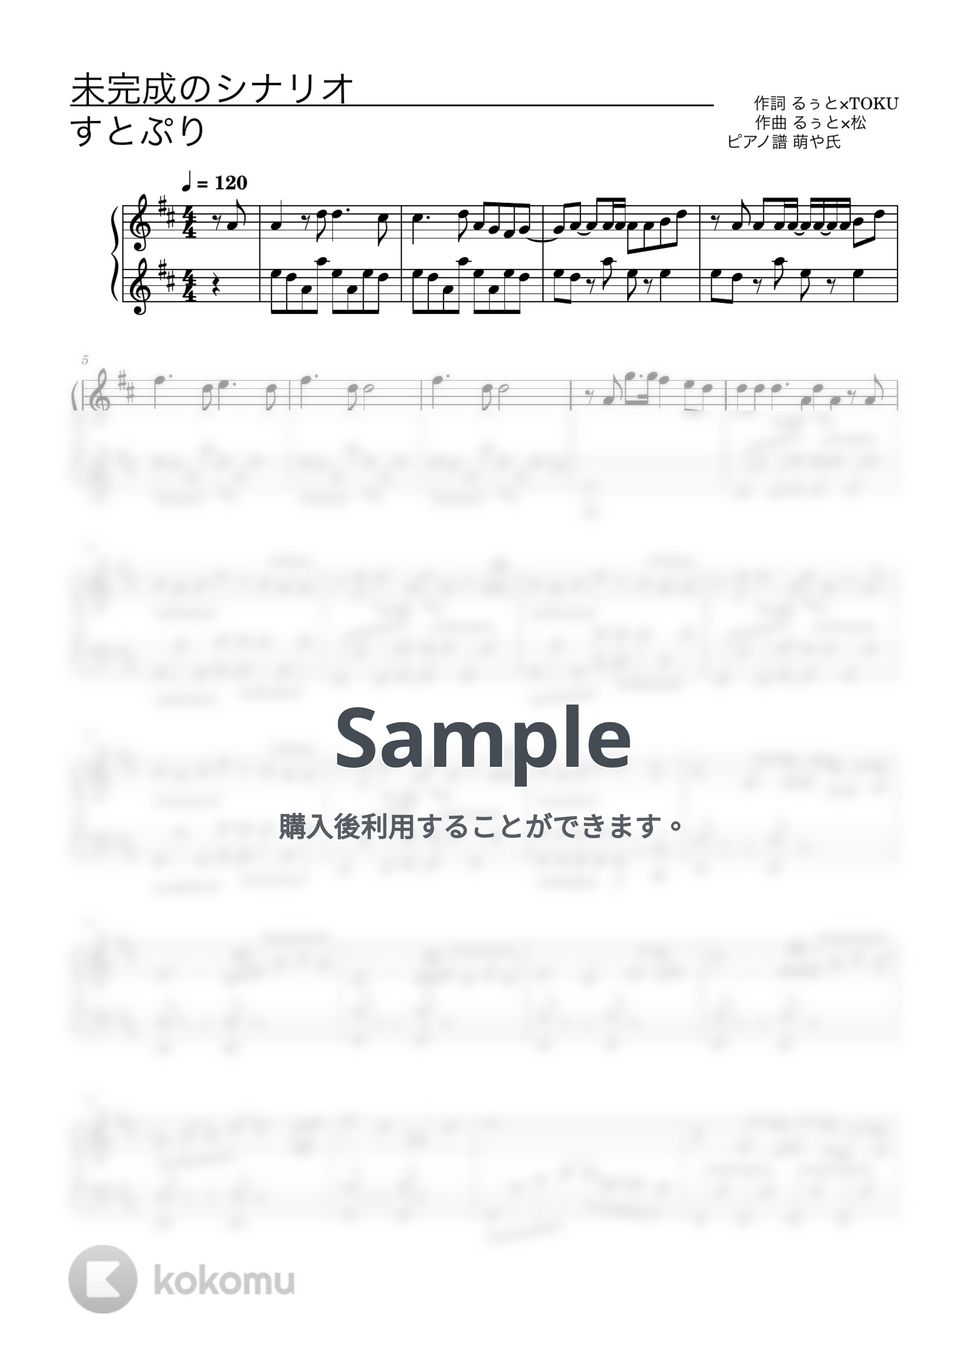 すとぷり - 未完成のシナリオ (ピアノソロ譜) by 萌や氏